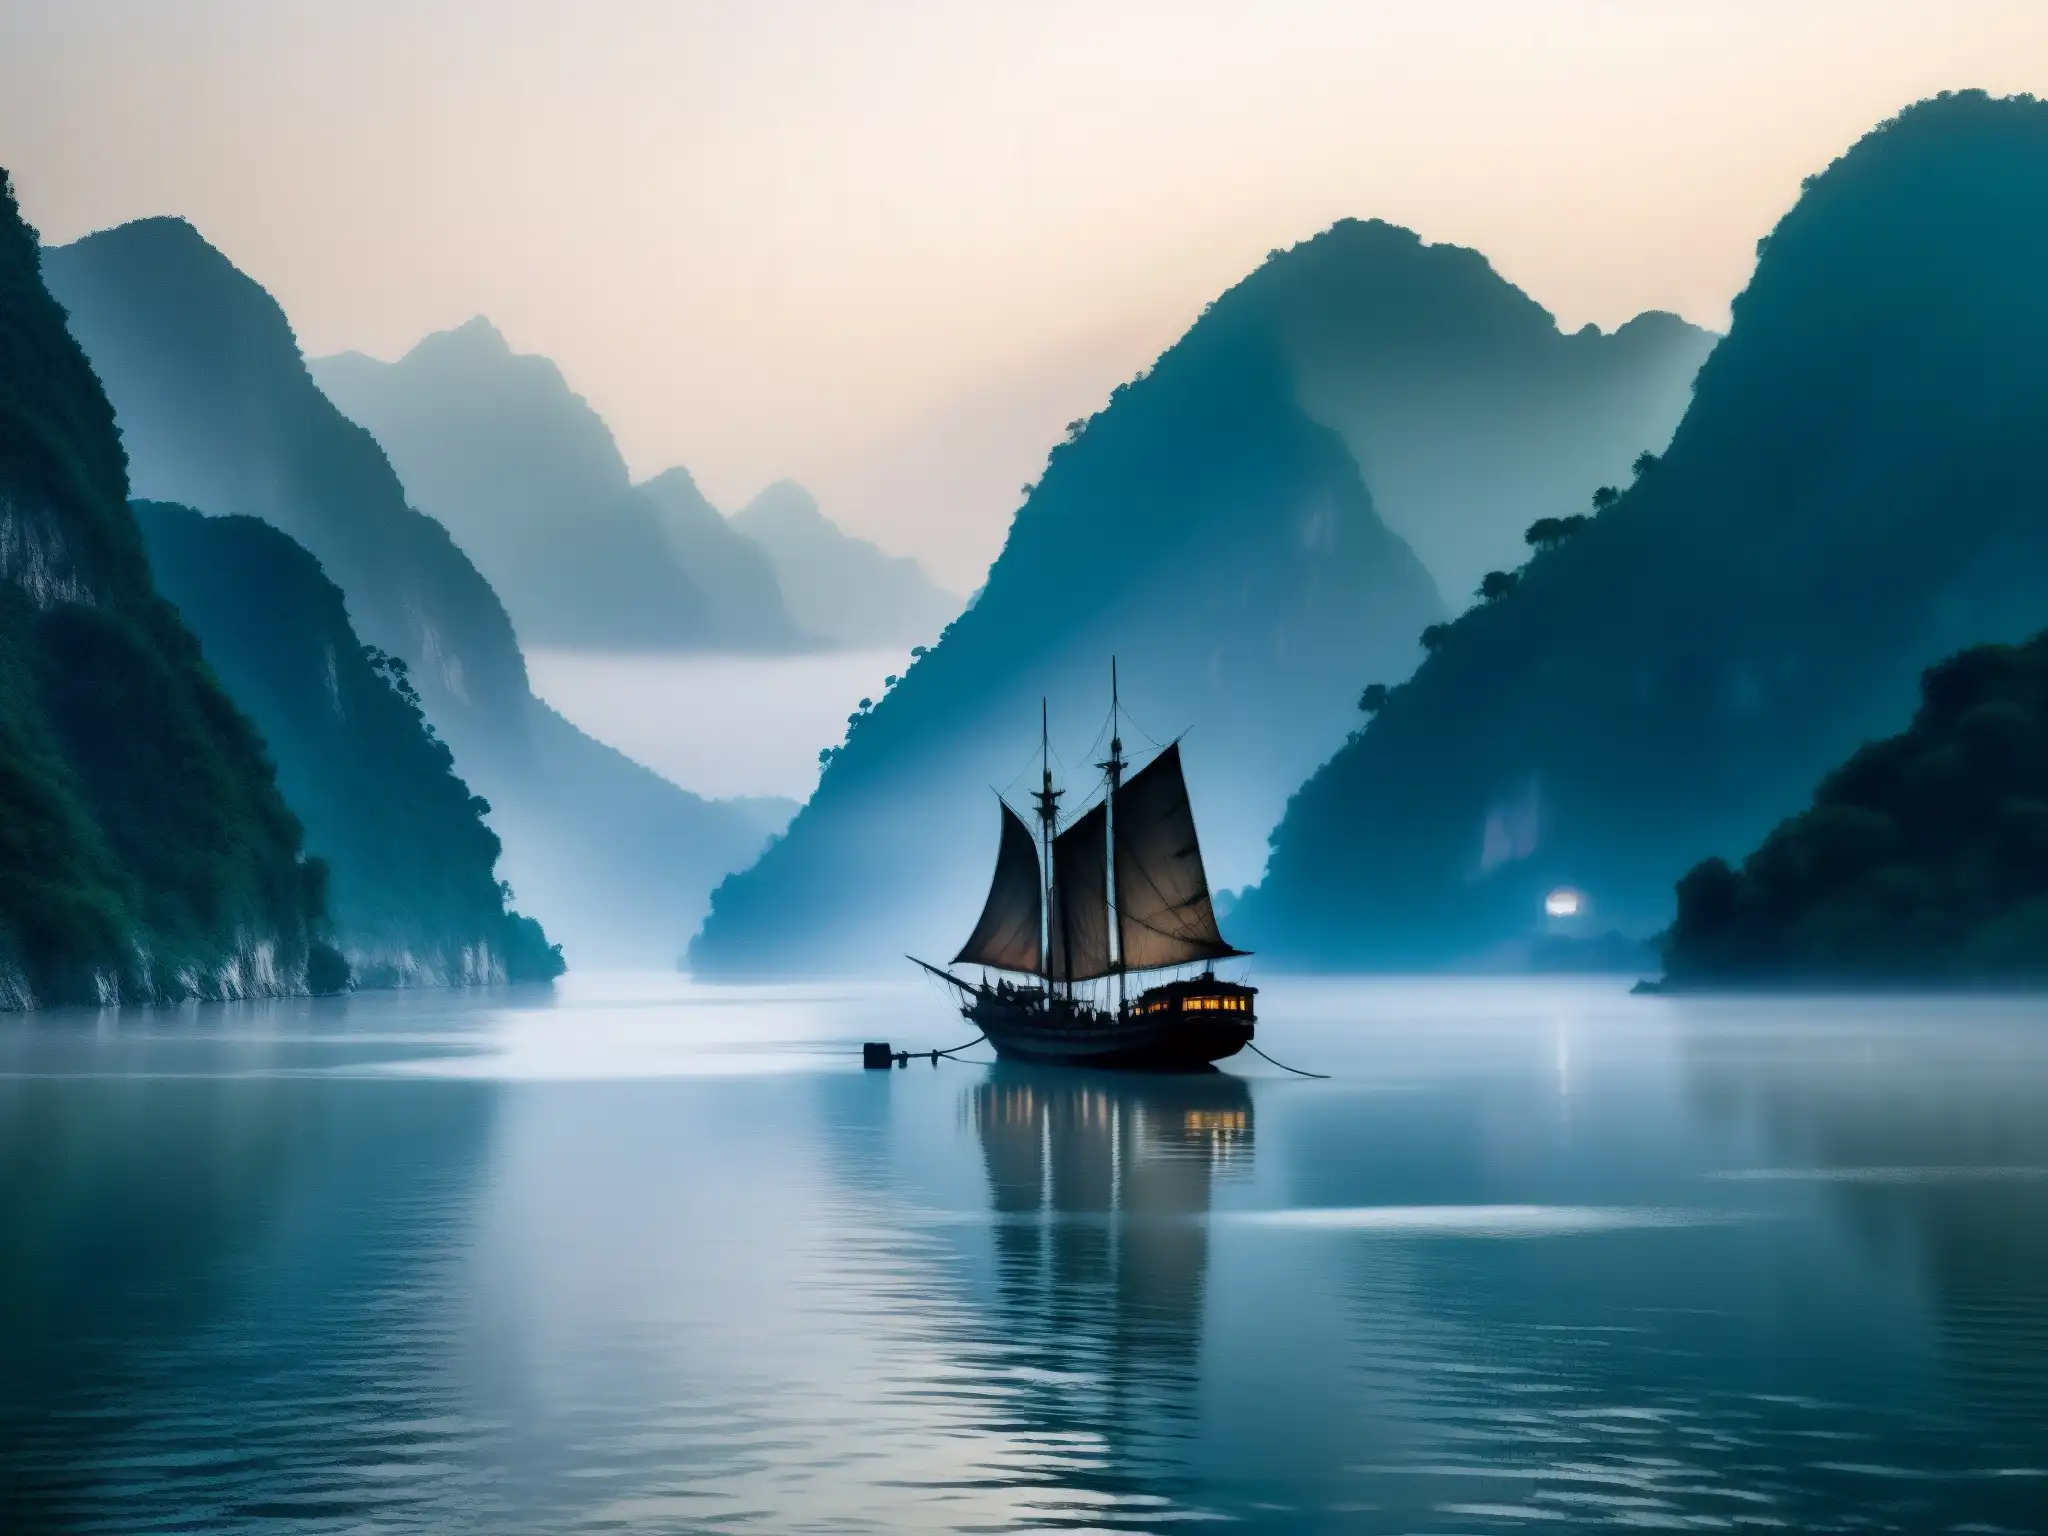 Misterioso barco fantasma en la neblina del río Yangtsé, reflejando el brillo fantasmal de la luna entre montañas ominosas